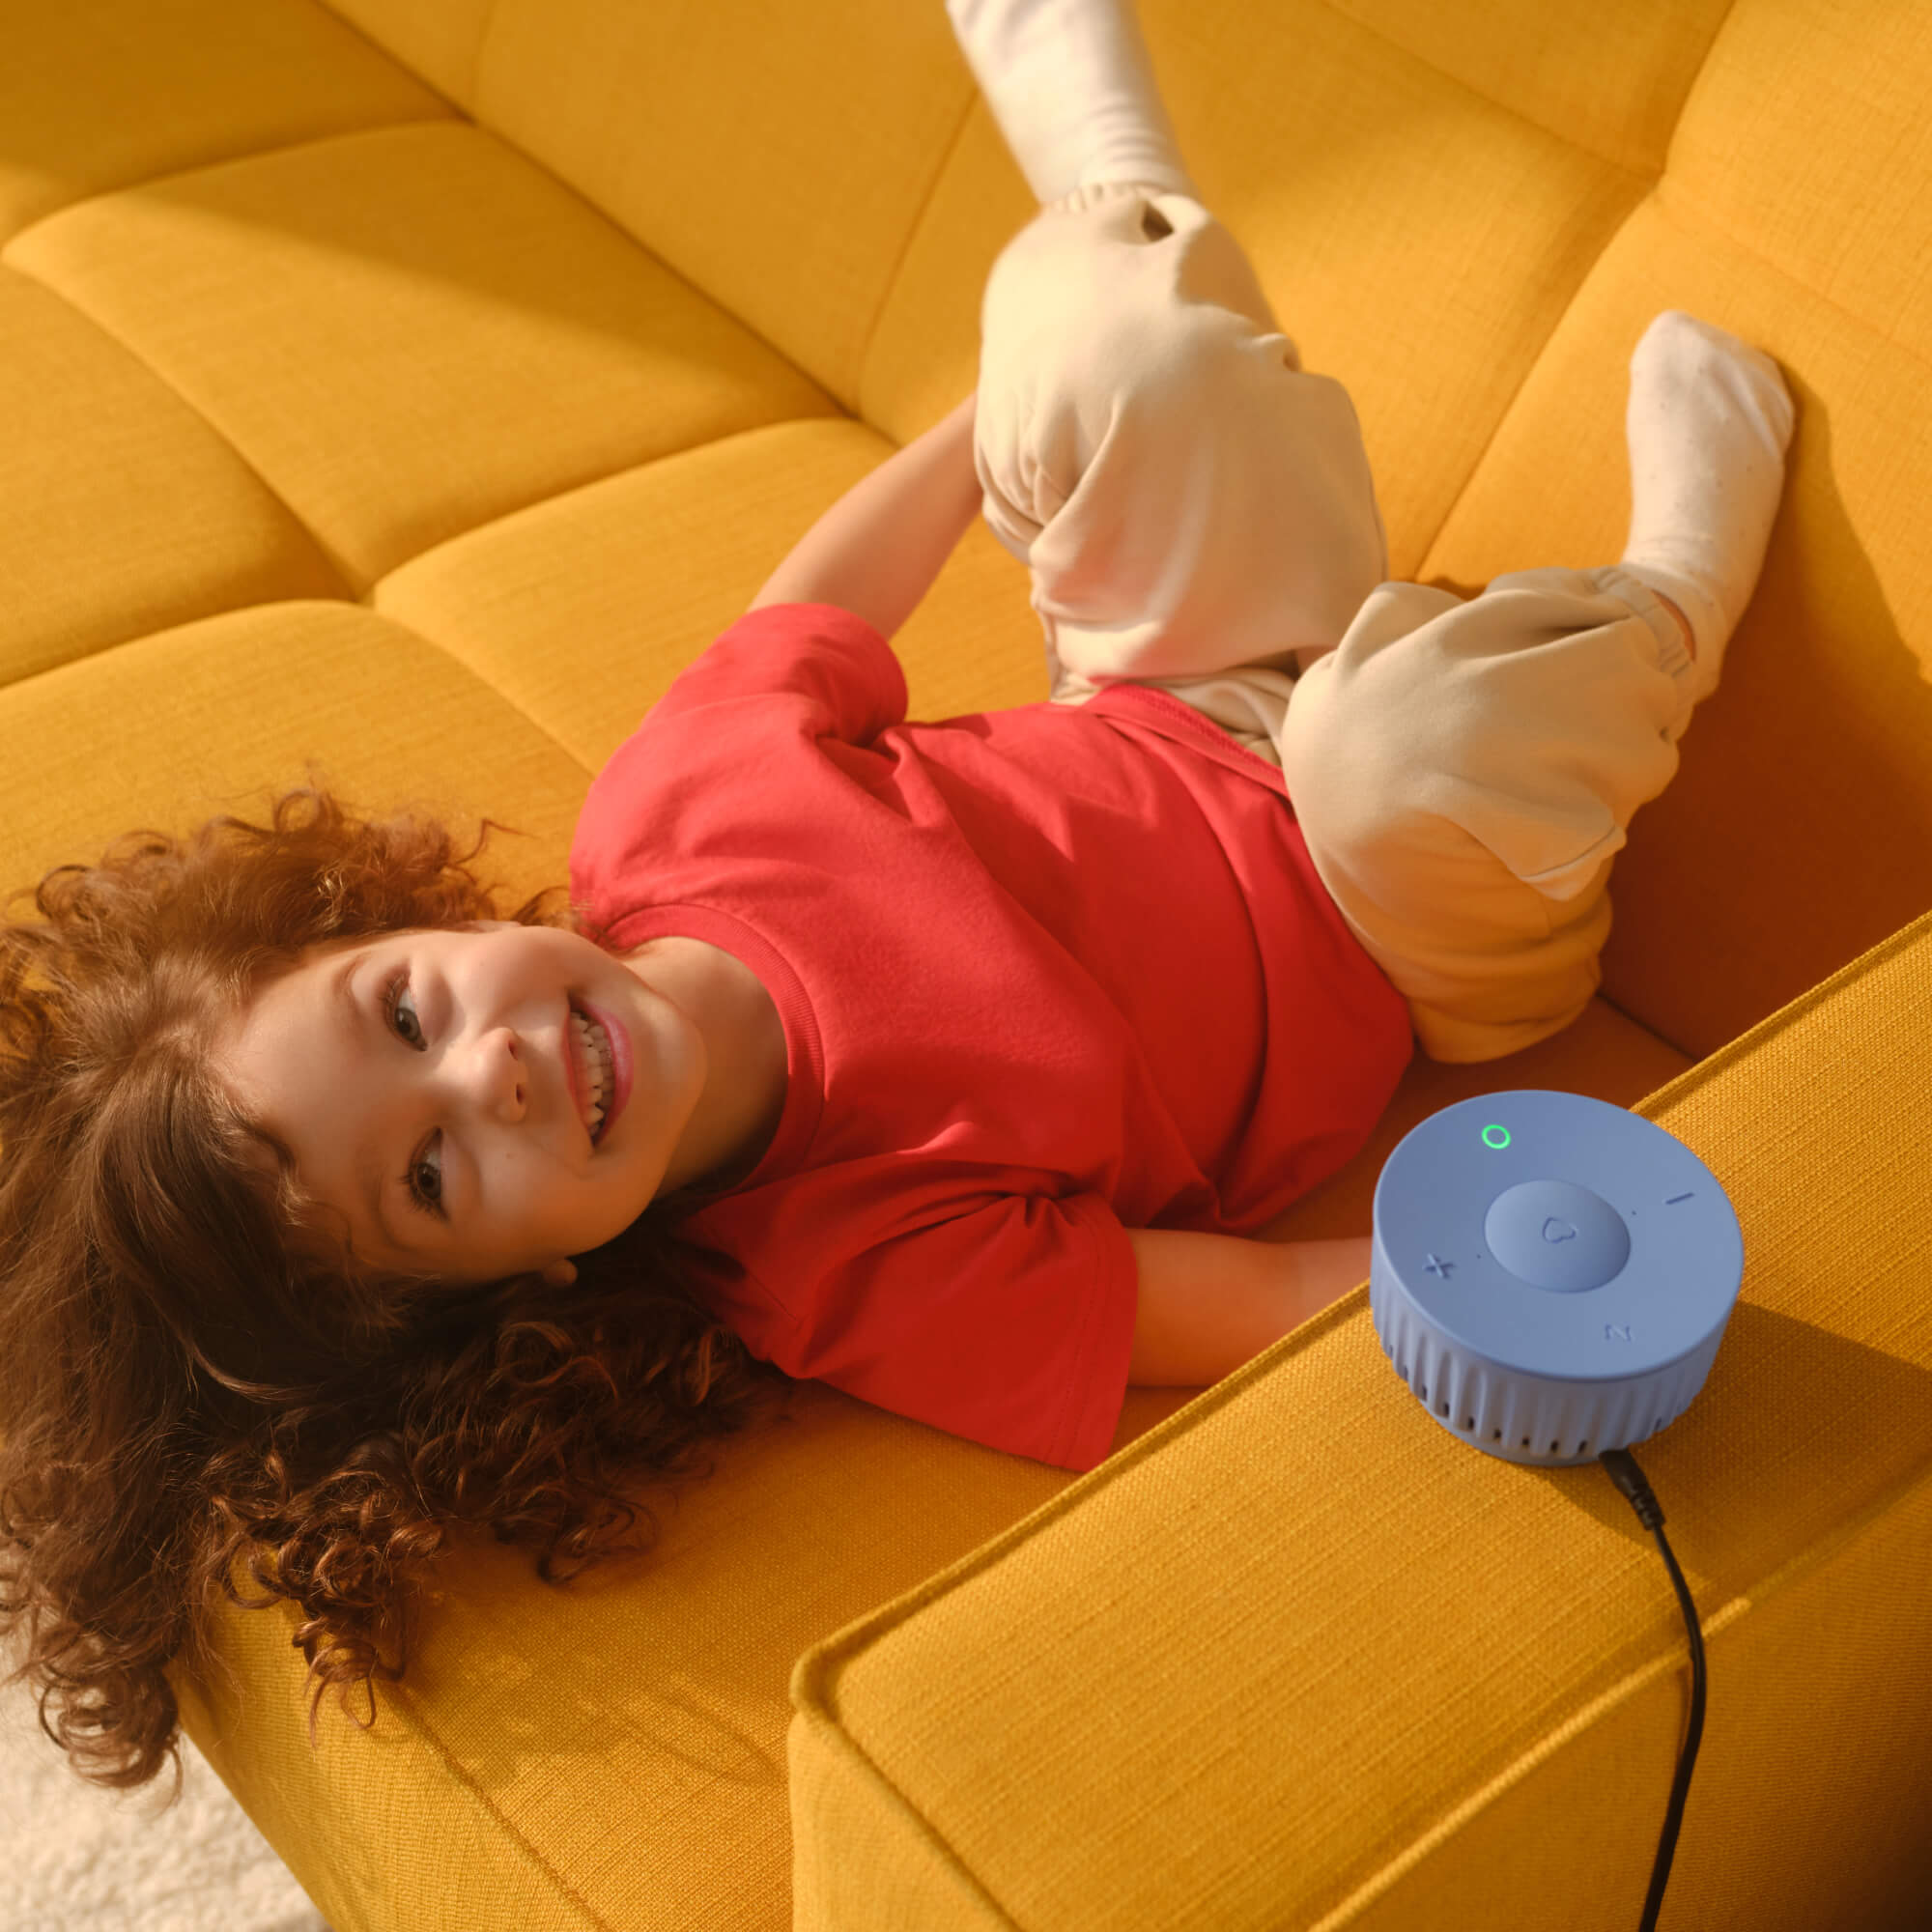 Умная колонка SberBoom Mini, голубой (SBDV-00095L) с голосовым управлением для детей и взрослых. GigaChat внутри, цвет безоблачный голубой - фото 4